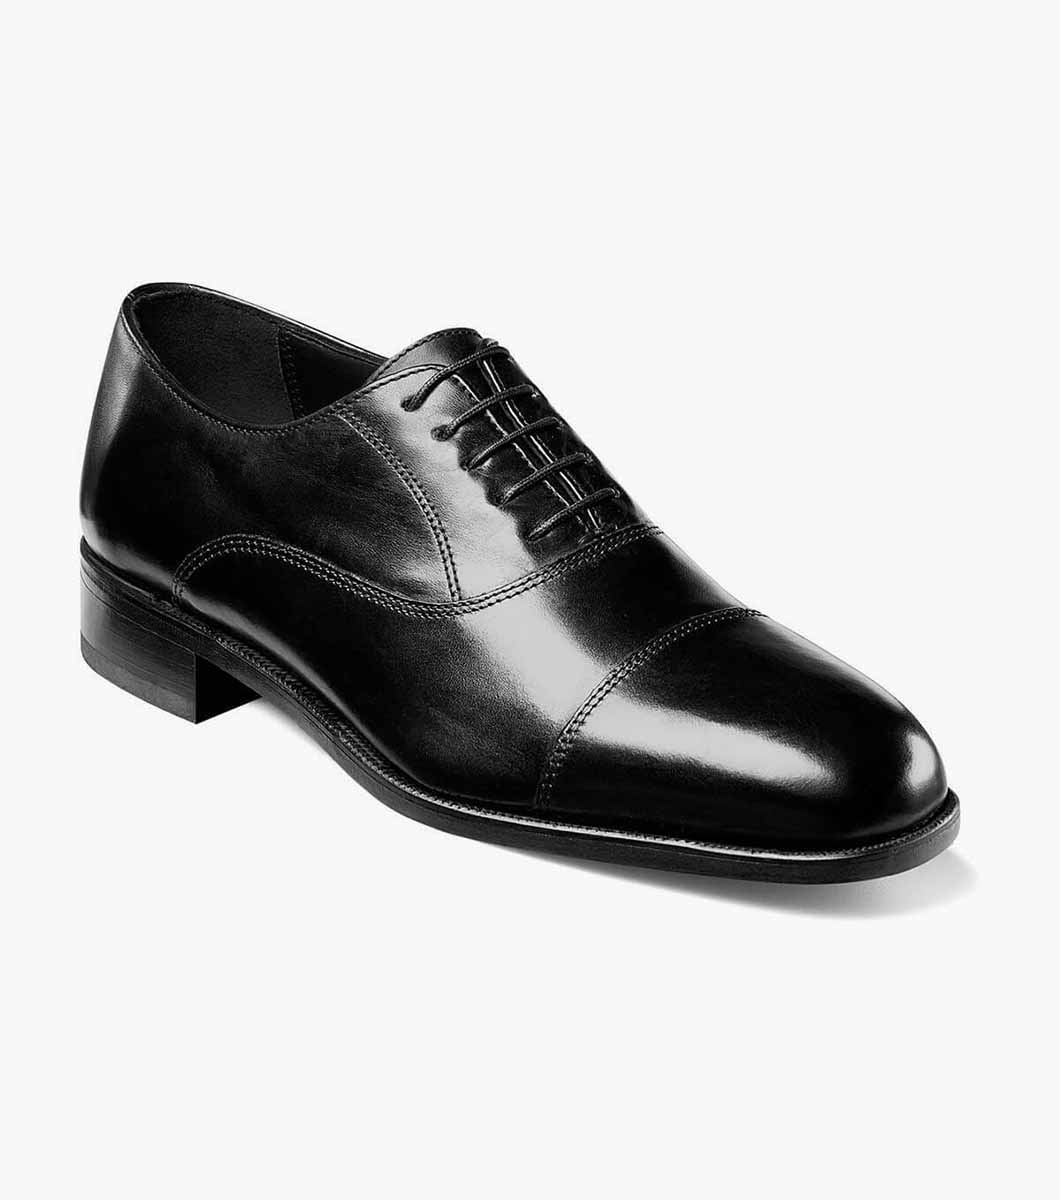 Edgar Cap Toe Oxford Men's Dress Shoes 